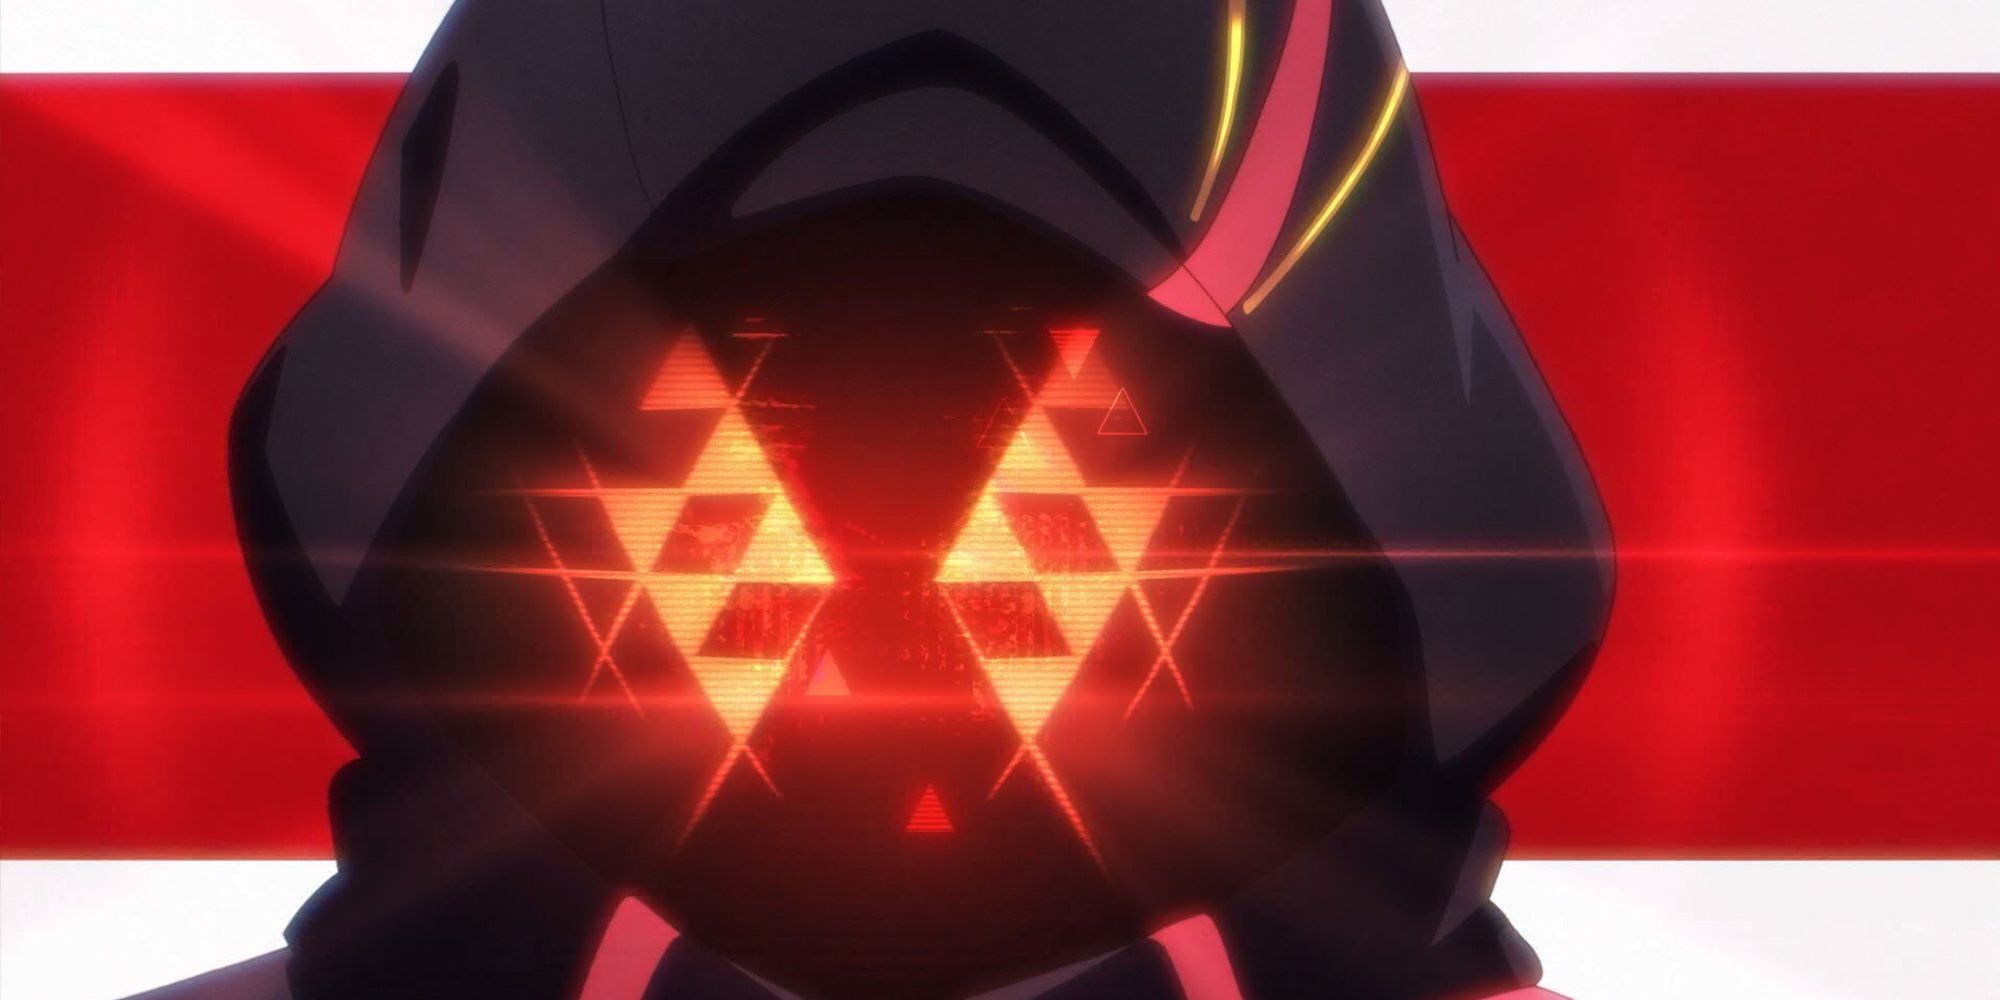 Topeng Hologram Nexus Merah Seperti Yang Terlihat Di Pembukaan Anime